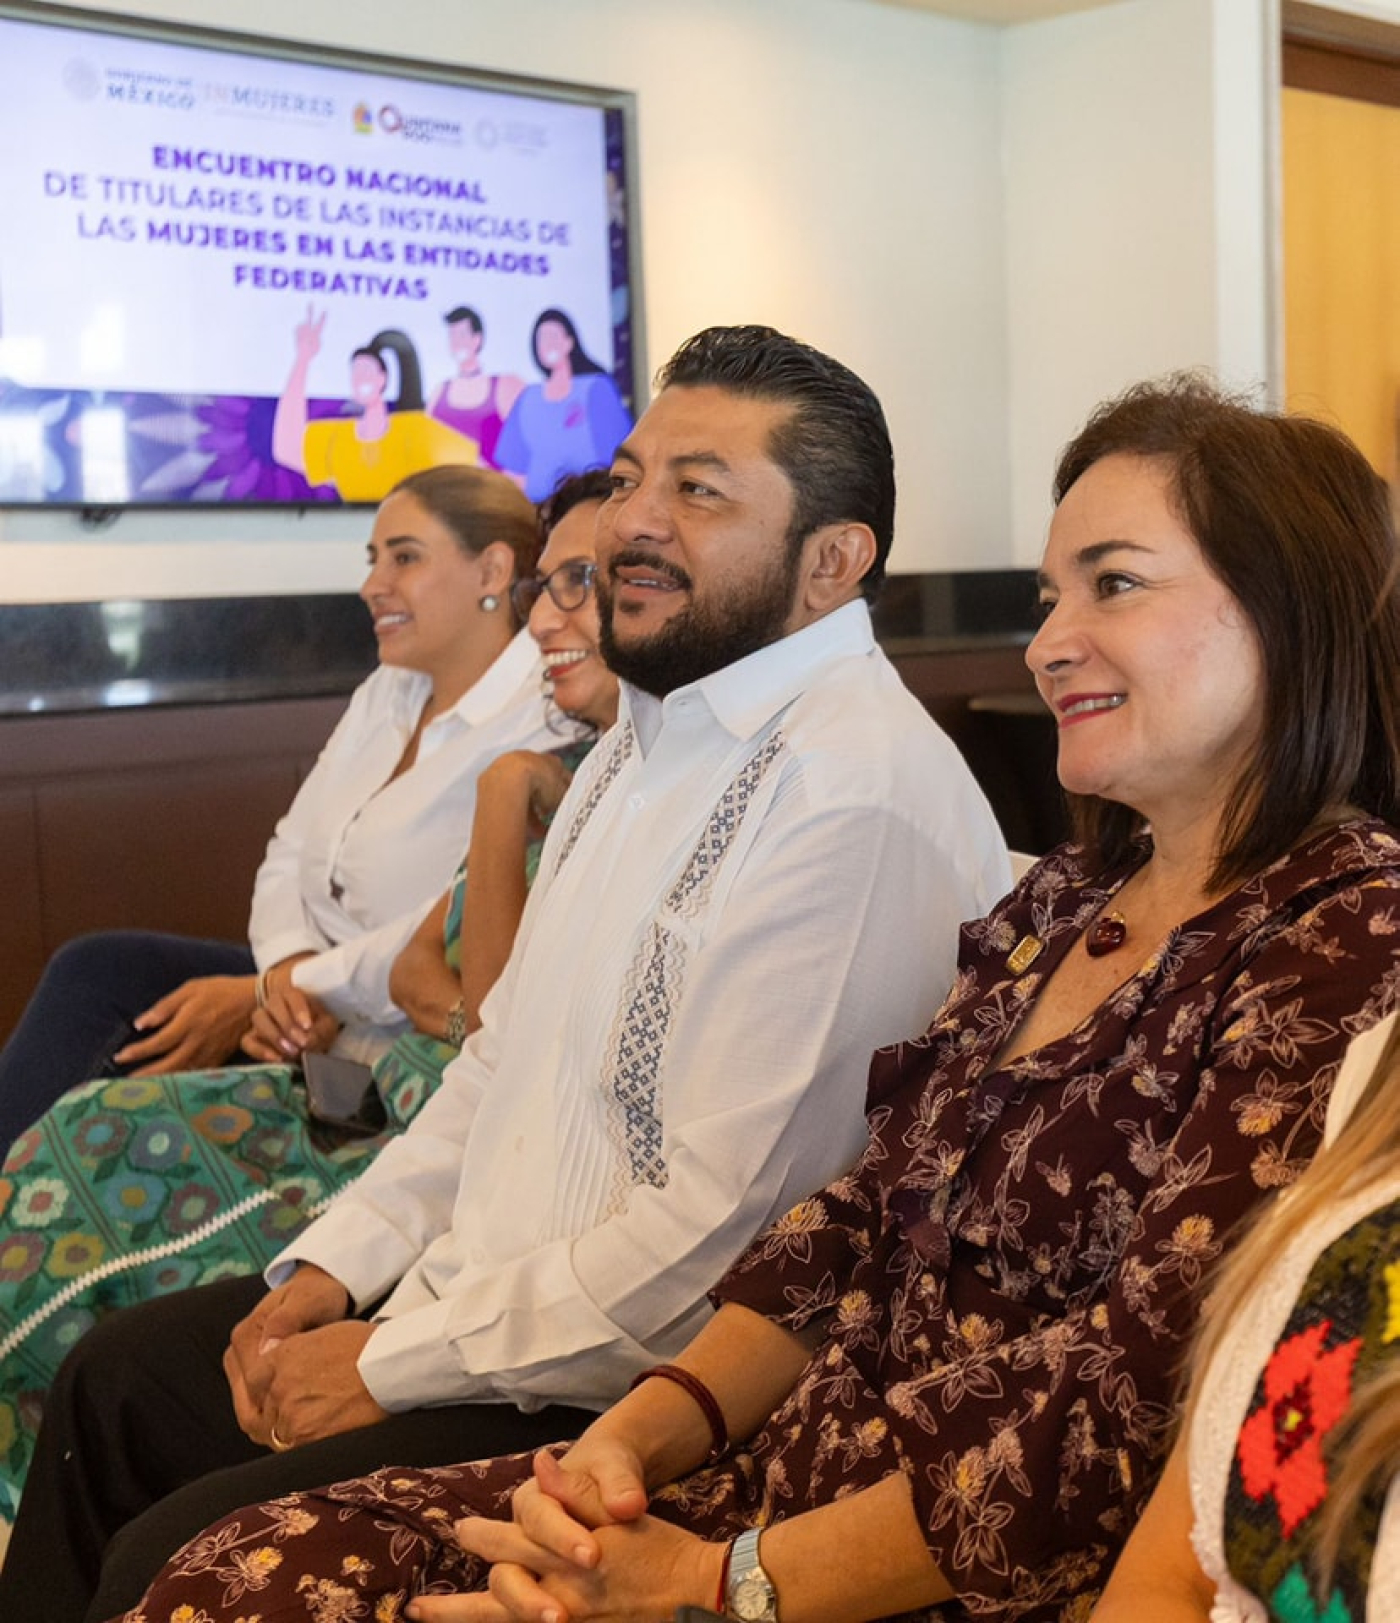 Juanita Alonso acude a encuentro nacional de titulares de las instancias para las mujeres